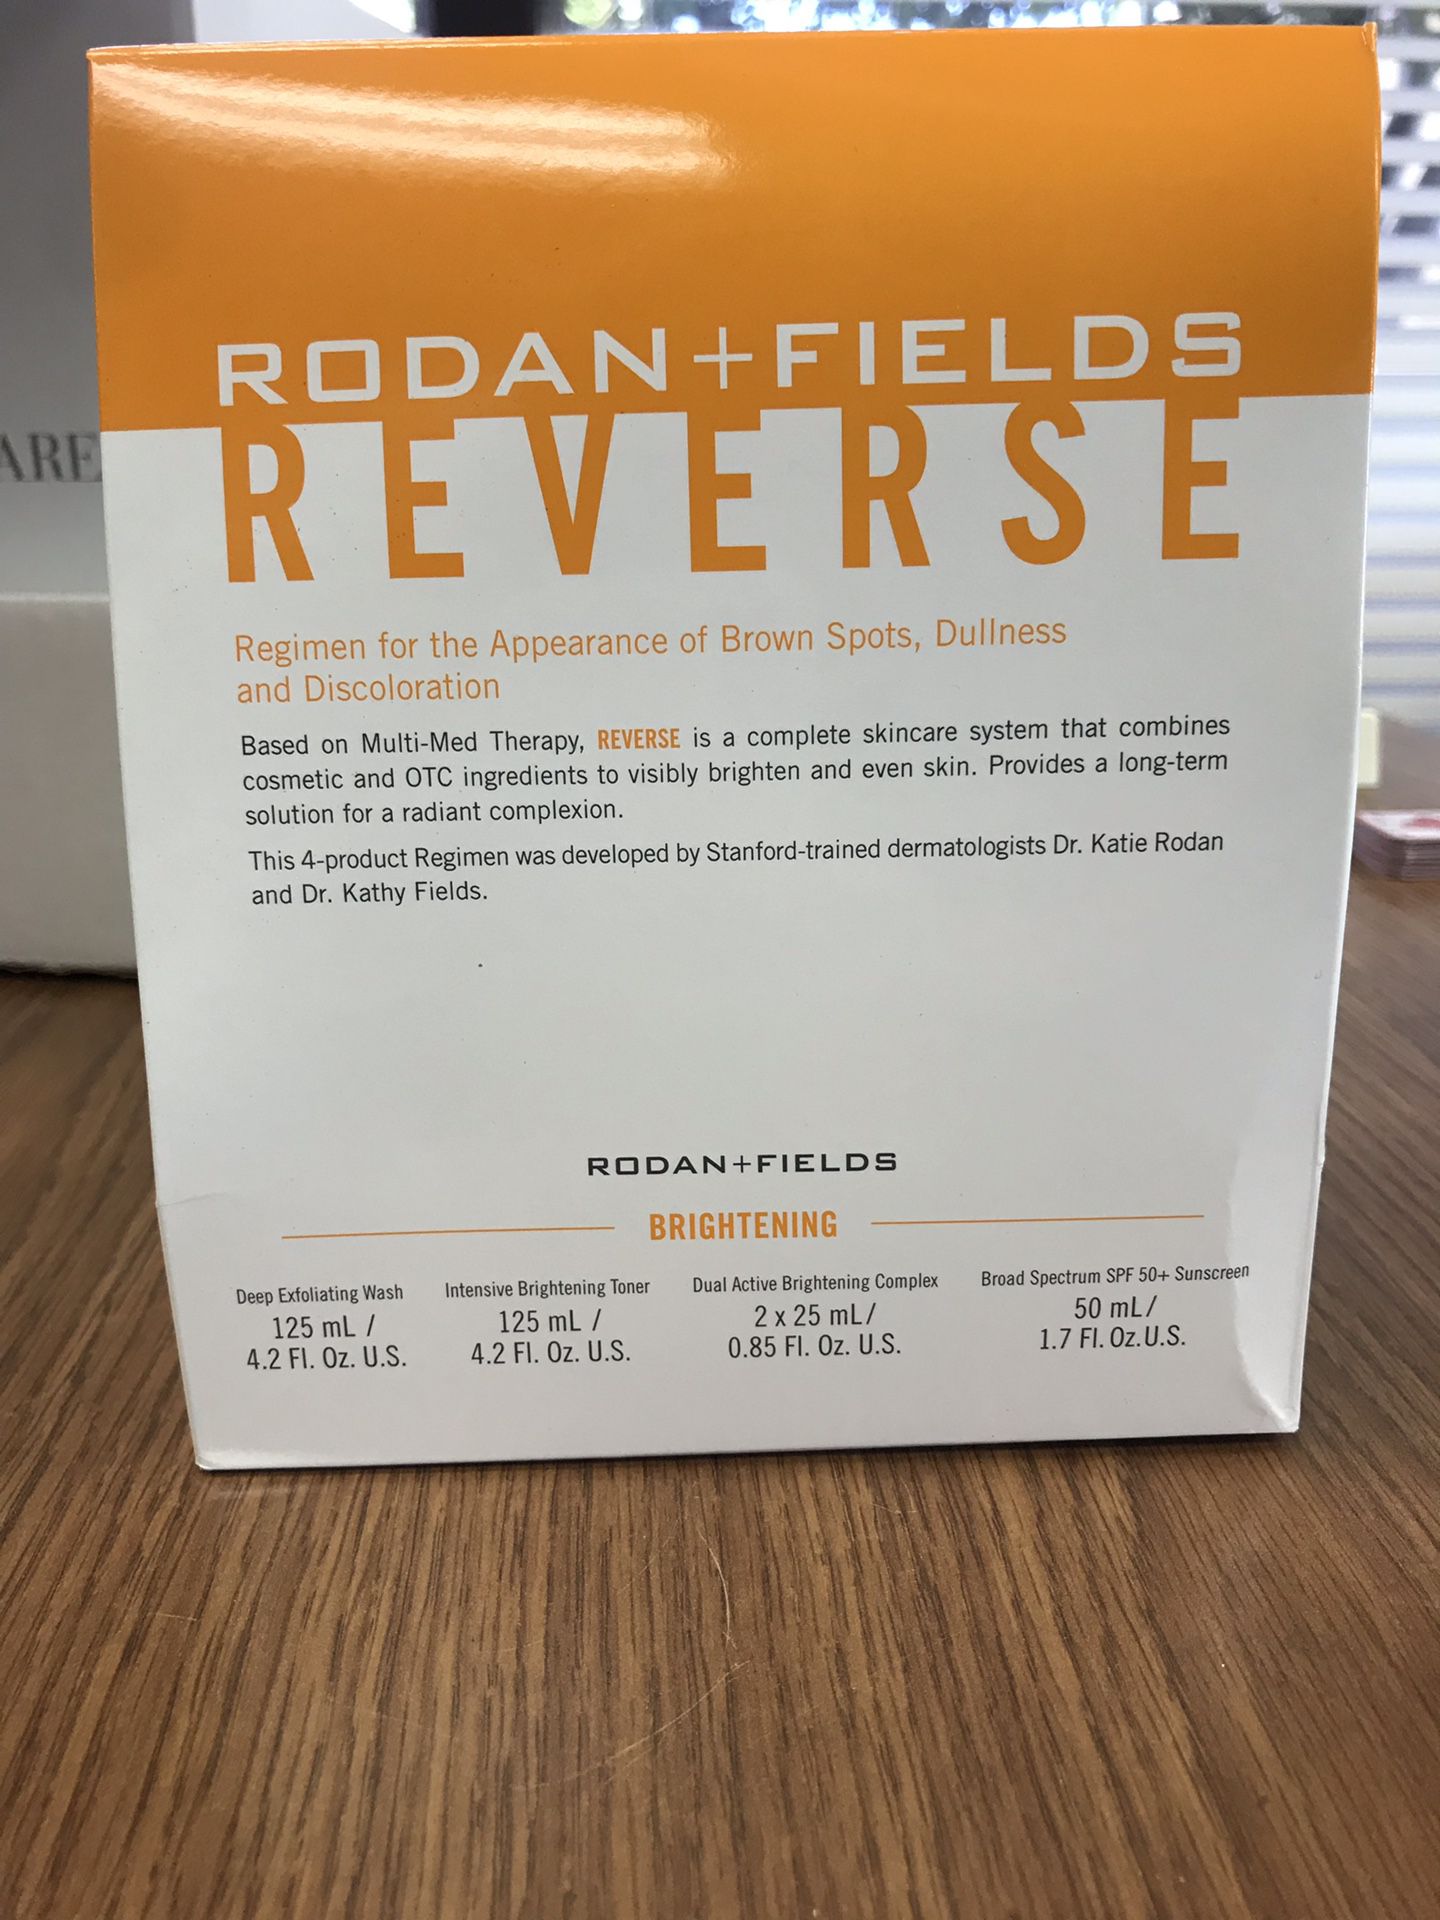 Rodan + Fields Reverse Regime